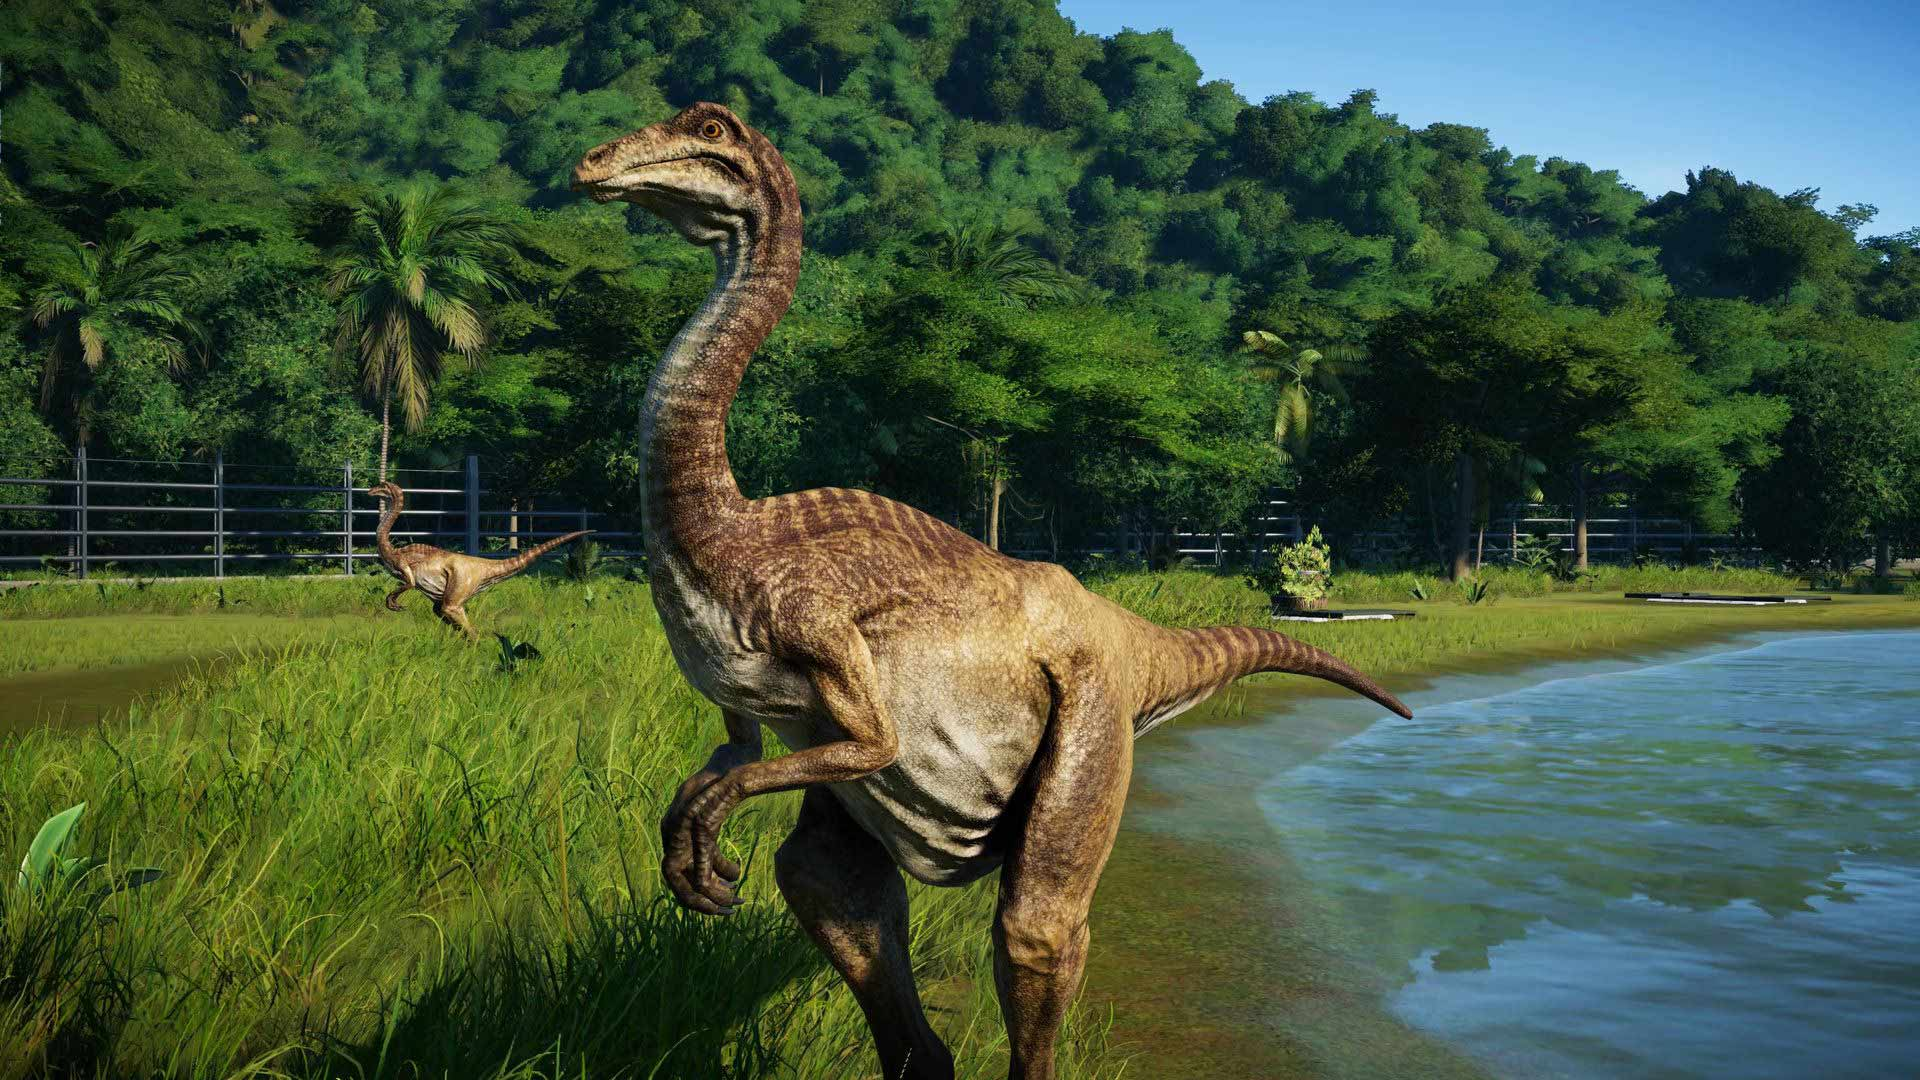 Jurassic world evolution 2: 10 советов по прохождению режима кампании